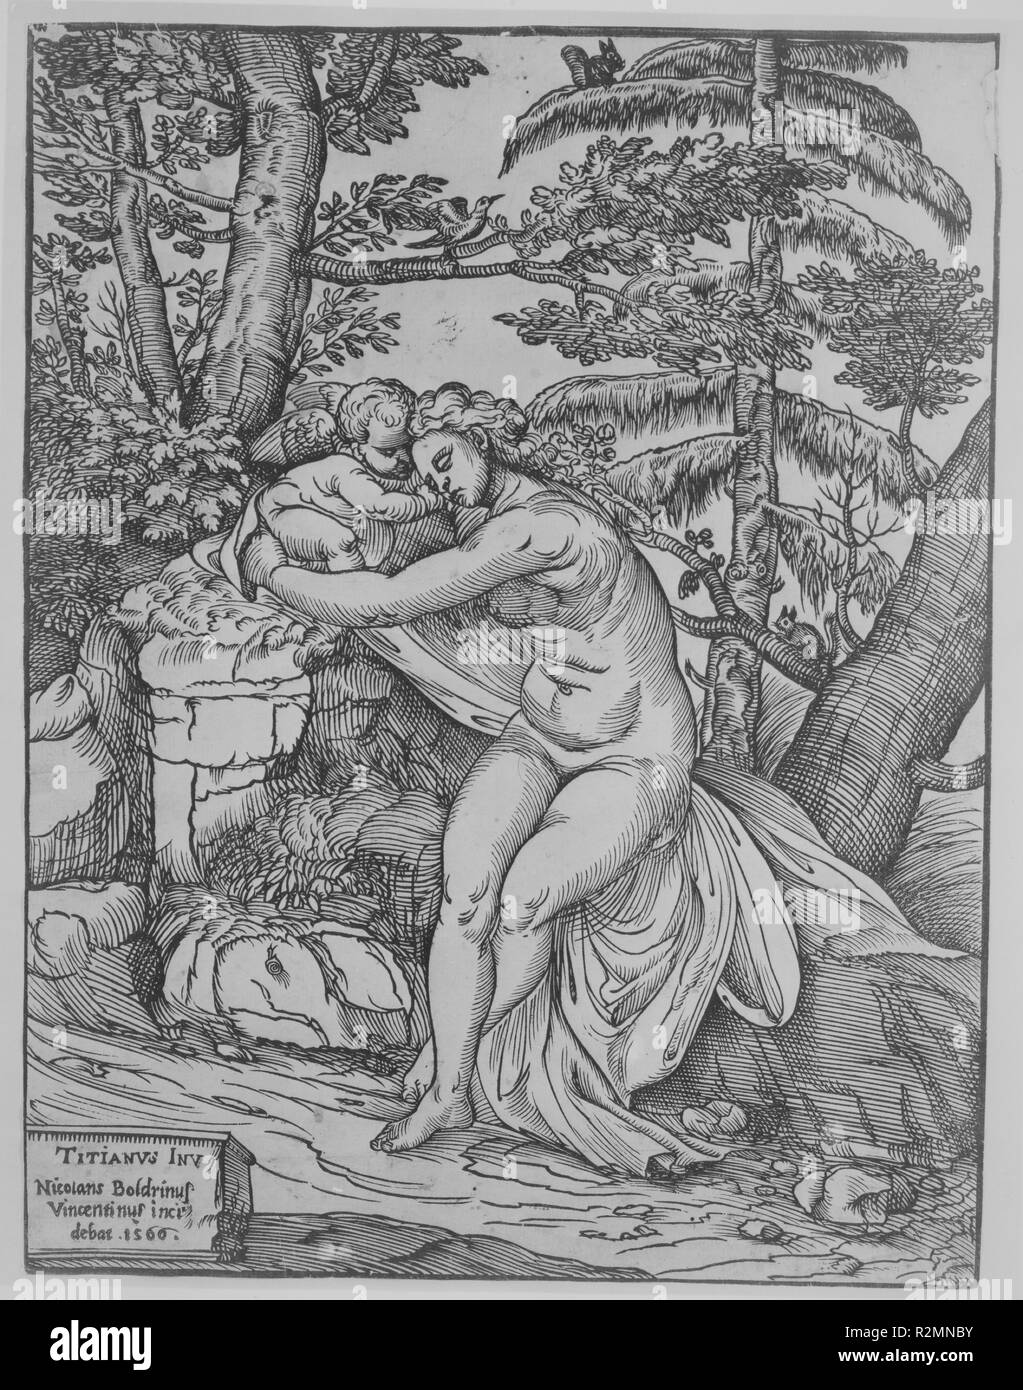 Vénus et Cupidon. Artiste : Après le Titien (Tiziano Vecellio) (Italien, Pieve di Cadore ca. 1485/90 ?-1576) ; Venise Nicolò Boldrini (Italien, Vicenza ca. 1500-après 1566) de Venise. Fiche Technique : Dimensions : 12 1/8 x 9 1/8 in. (30,8 × 23,2 cm) (boîte de frontière). Date : 1566. Musée : Metropolitan Museum of Art, New York, USA. Auteur : Après le Titien (Tiziano Vecellio). Nicolò Boldrini. Niccolò Boldrini après Titien. Banque D'Images